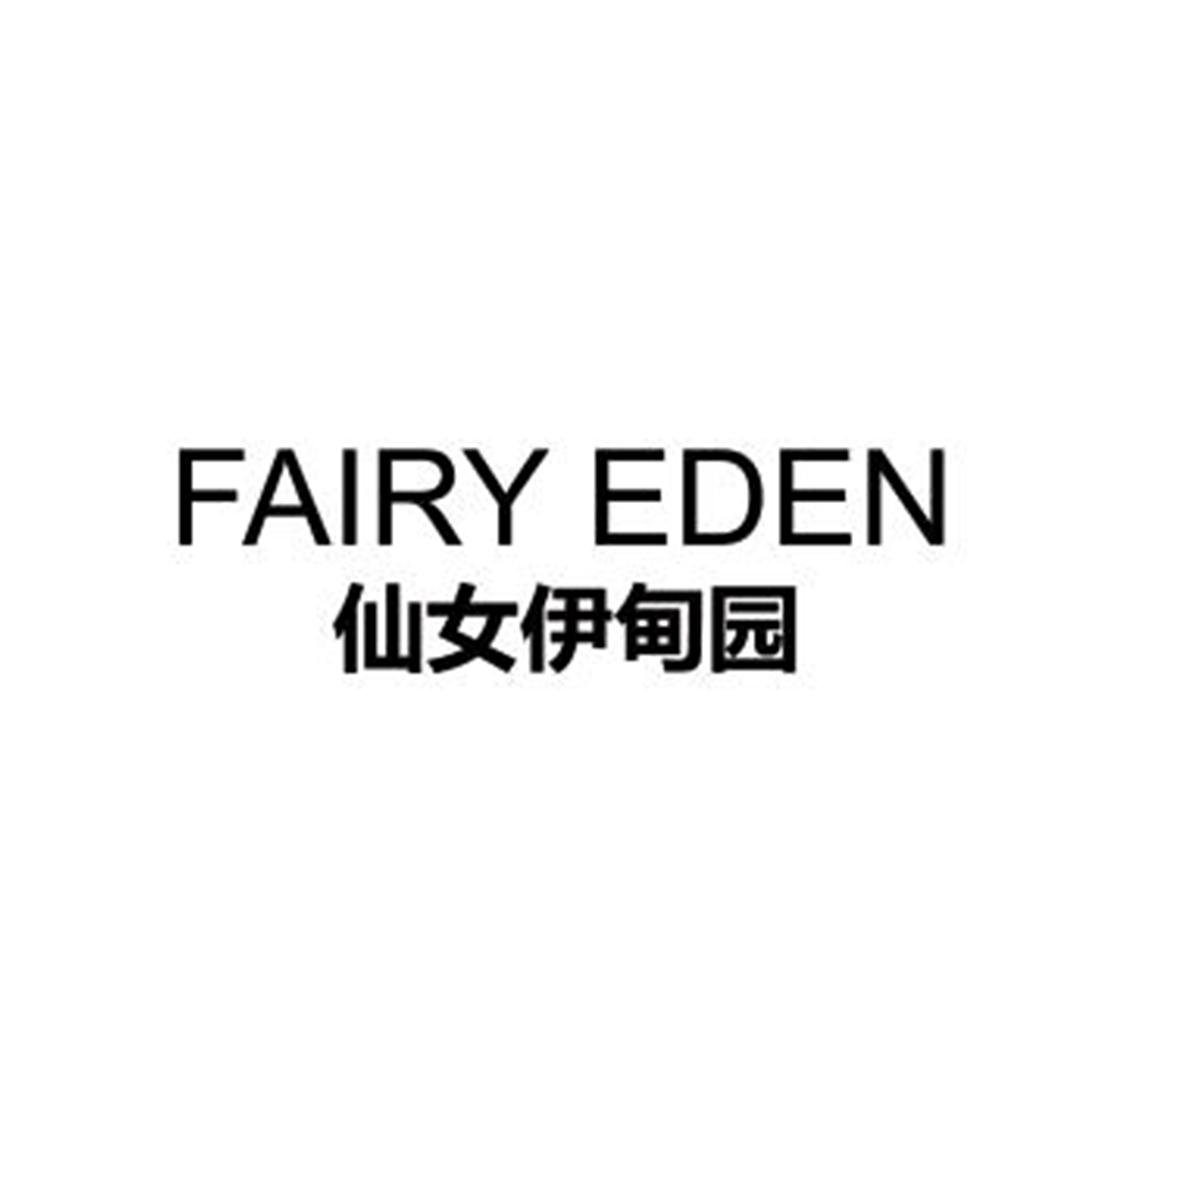 25类-服装鞋帽仙女伊甸园 FAIRY EDEN商标转让